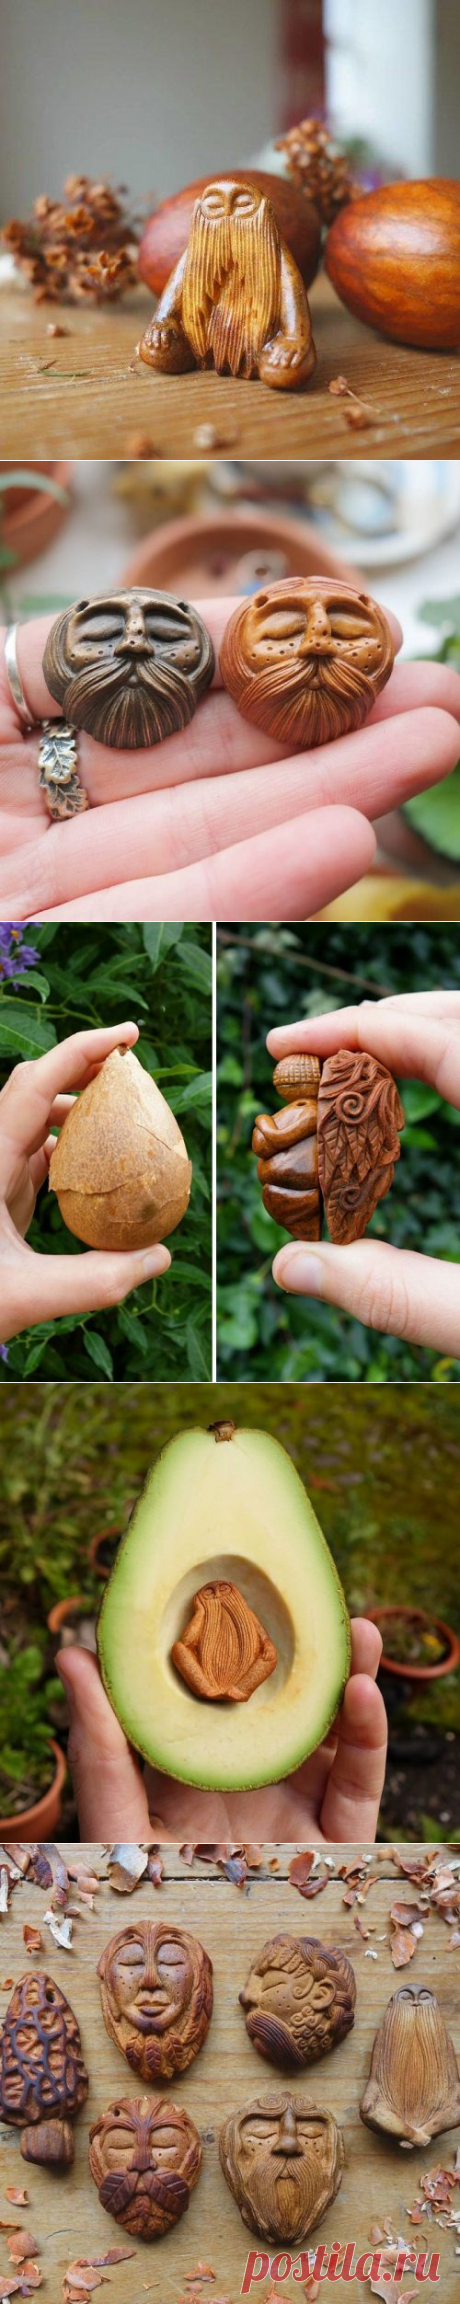 Миниатюрные скульптуры-тотемы из косточек авокадо